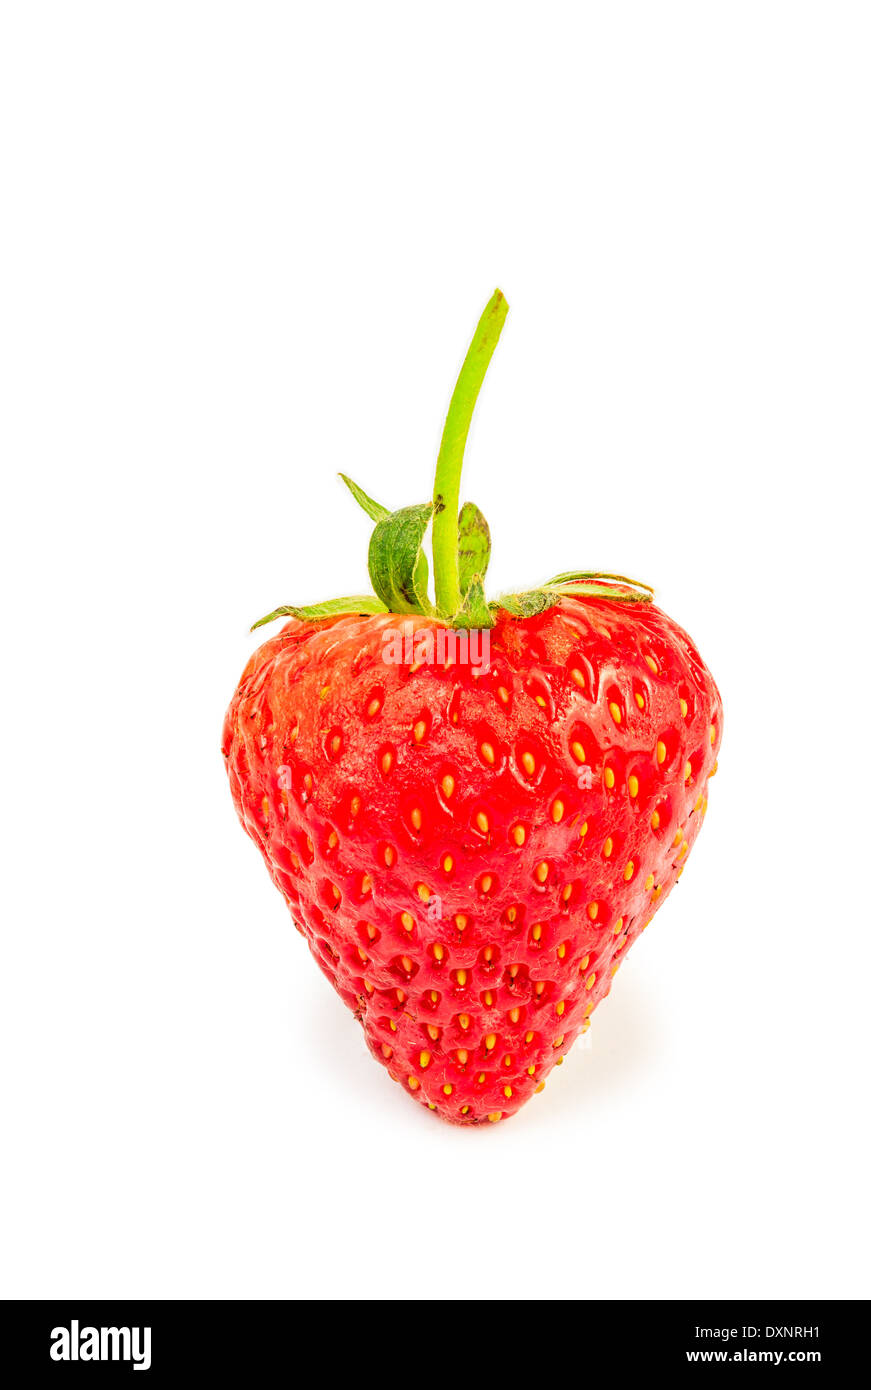 Heart shaped strawberry isolated white background Stock Photo